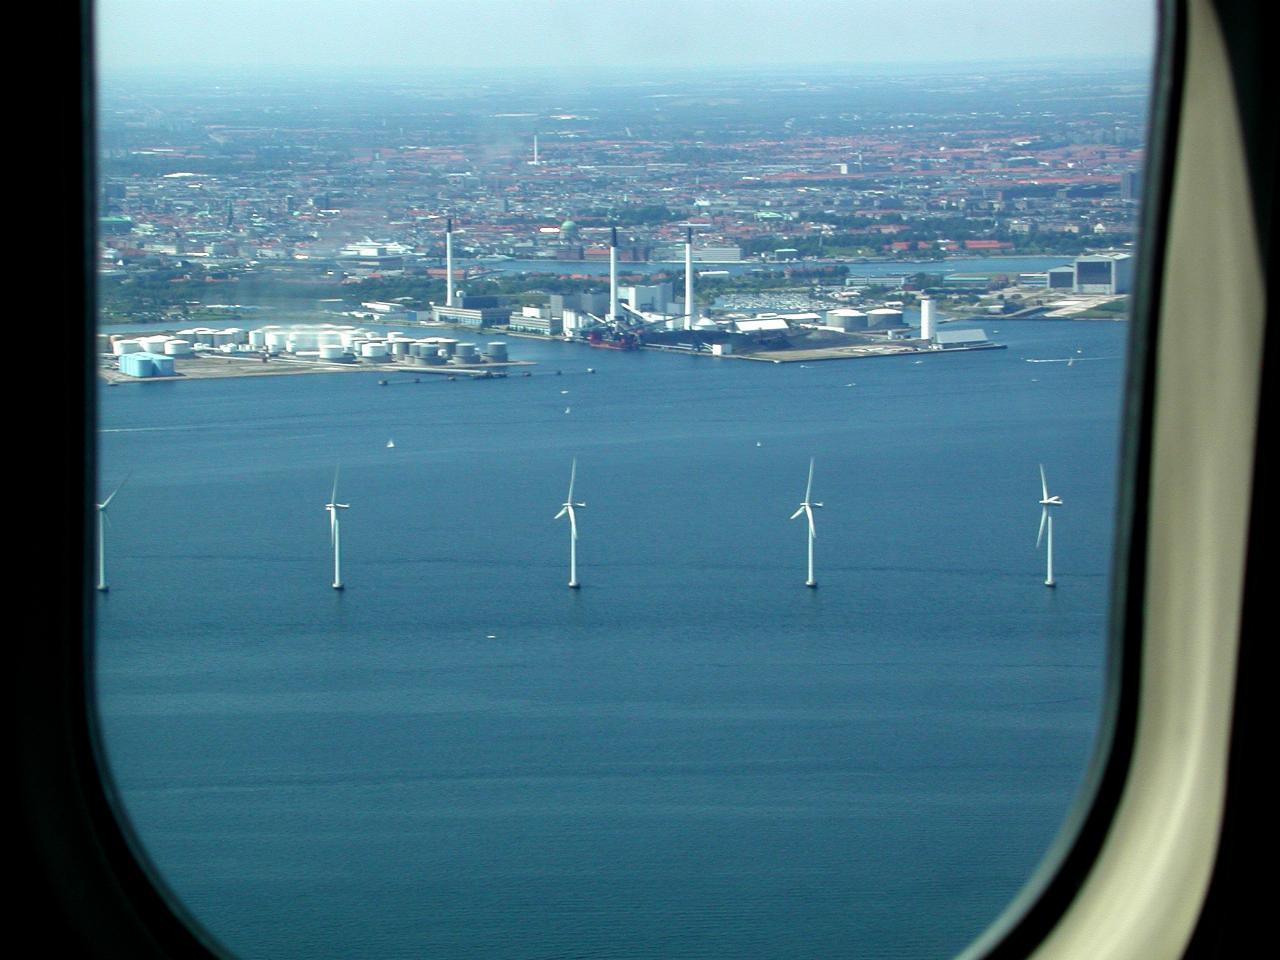 KPLU Viking Jazz: Copenhagen's windmill farm in the harbour